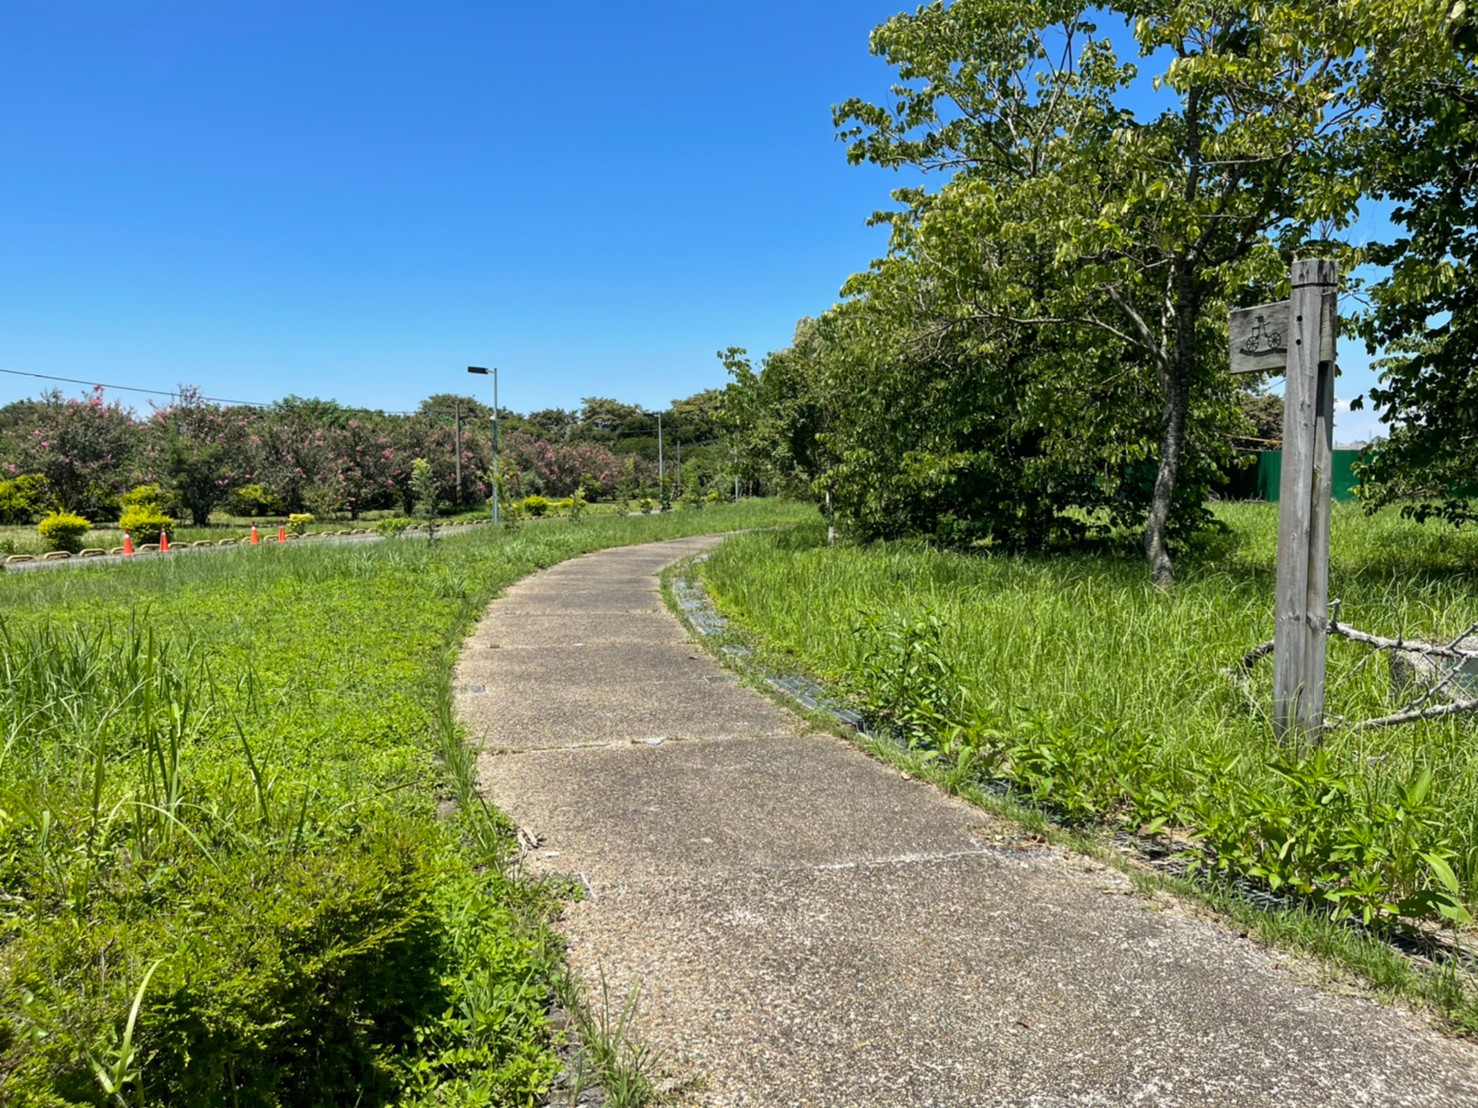 富州里在自行車道旁透過種植多種綠化植物，增加了綠覆面積，也吸引鳥蝶前來棲息，形成蝴蝶廊道。